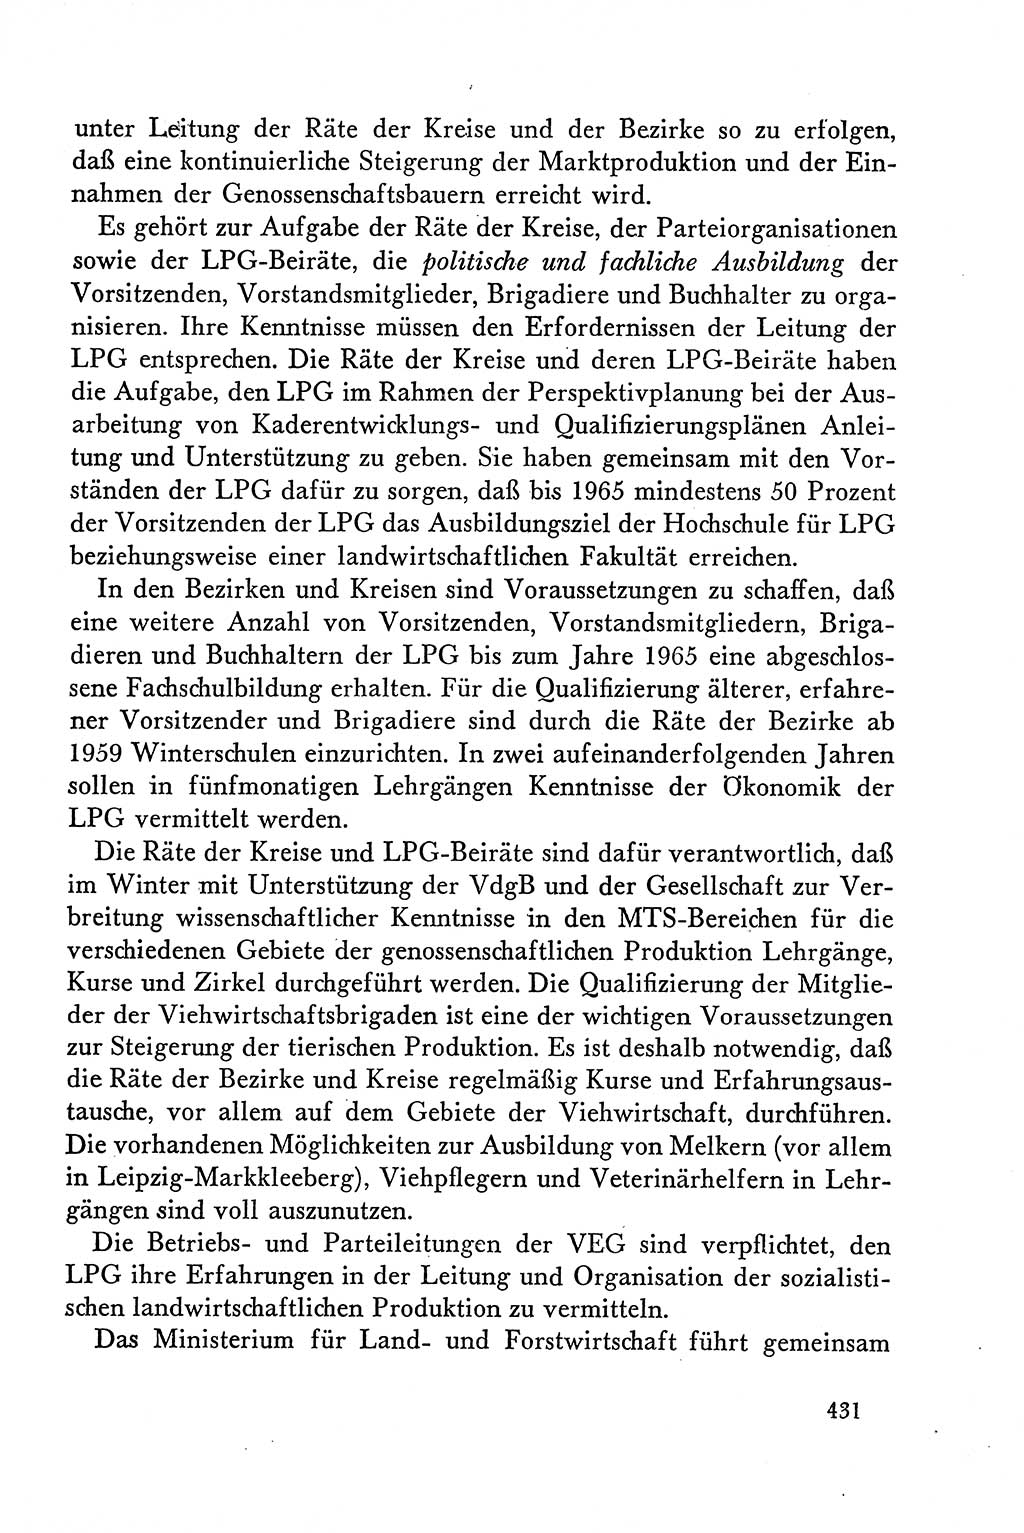 Dokumente der Sozialistischen Einheitspartei Deutschlands (SED) [Deutsche Demokratische Republik (DDR)] 1958-1959, Seite 431 (Dok. SED DDR 1958-1959, S. 431)